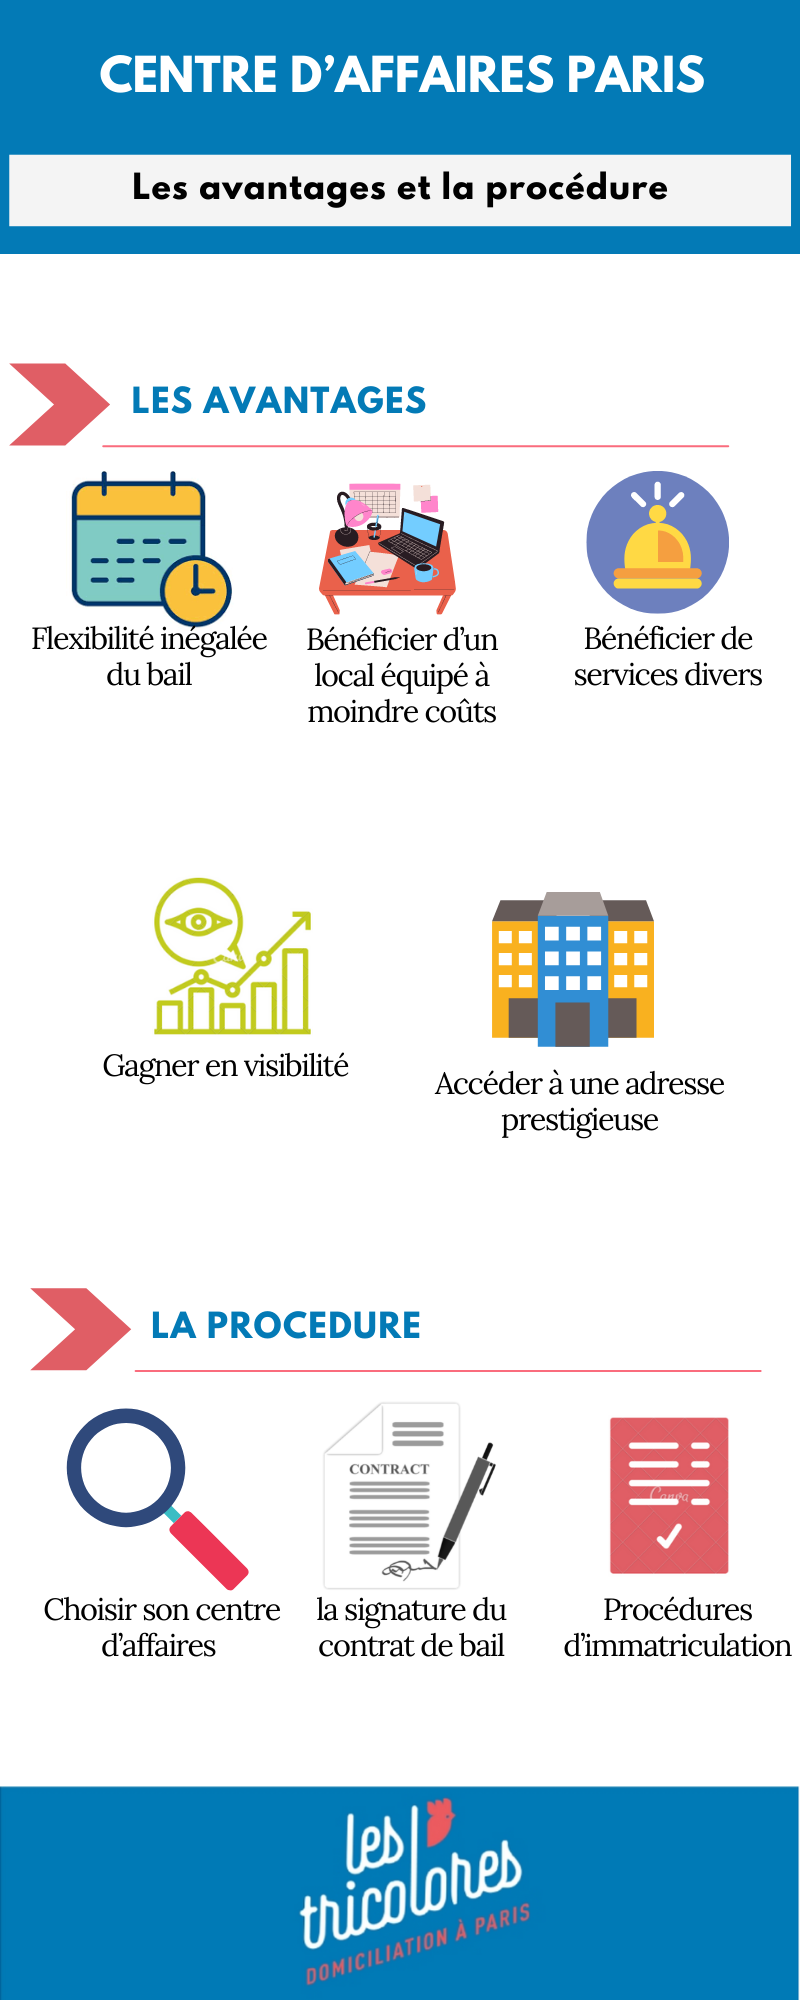 Centre d’affaires Paris: les avantages et la procédure